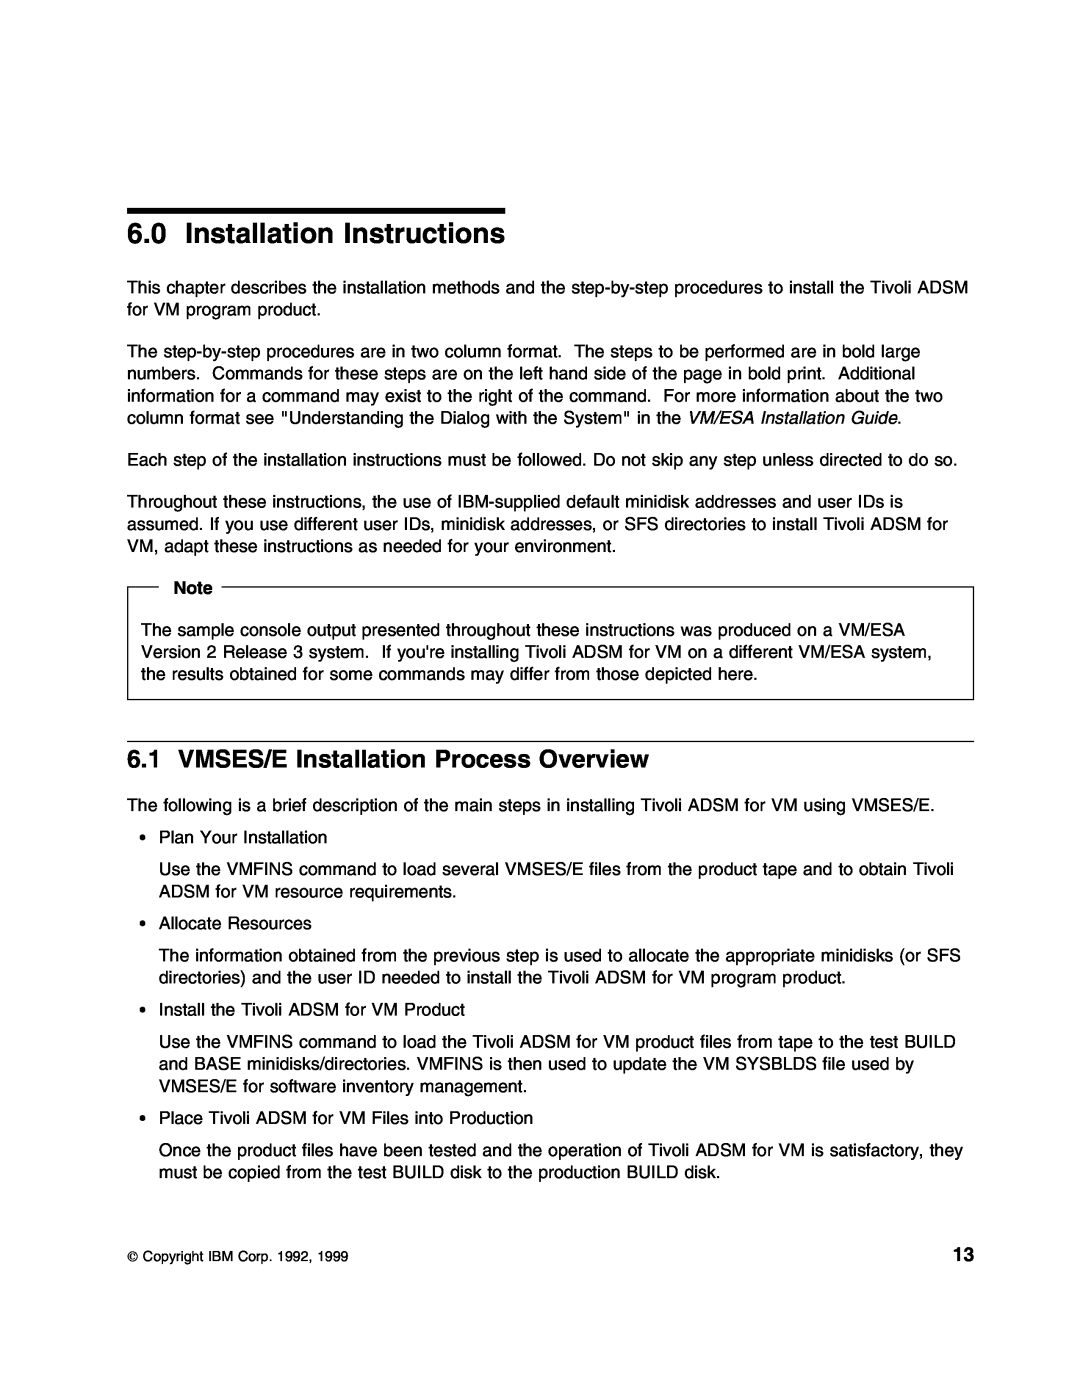 IBM 5697-VM3 manual Installation Instructions, VMSES/E Installation Process Overview 